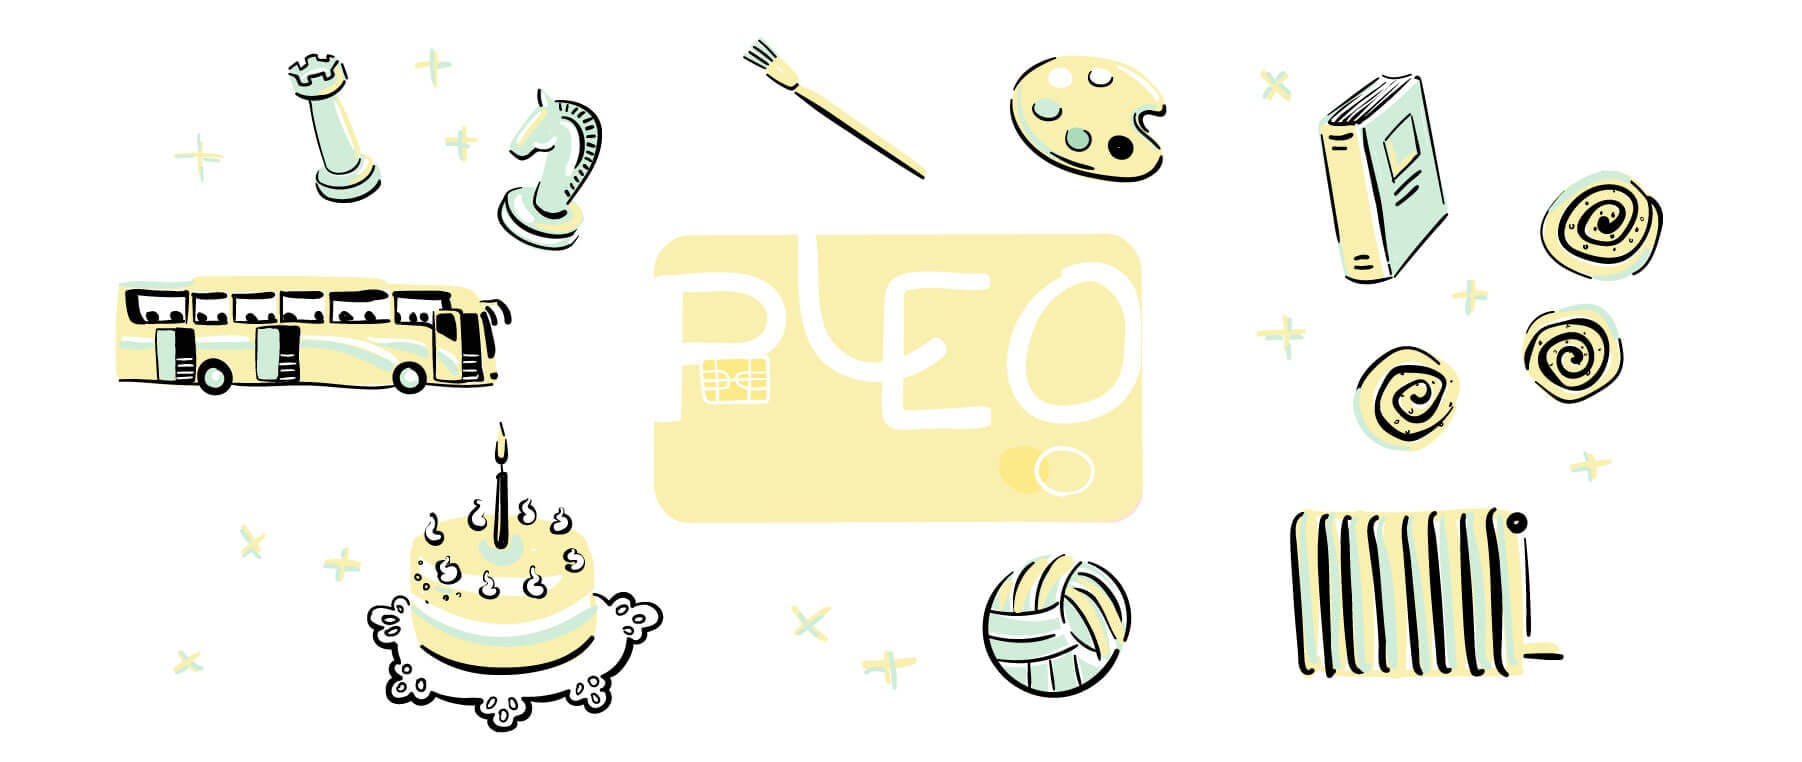 Pleo hjælper sociale tilbud med at spare tid på håndtering af udgifter